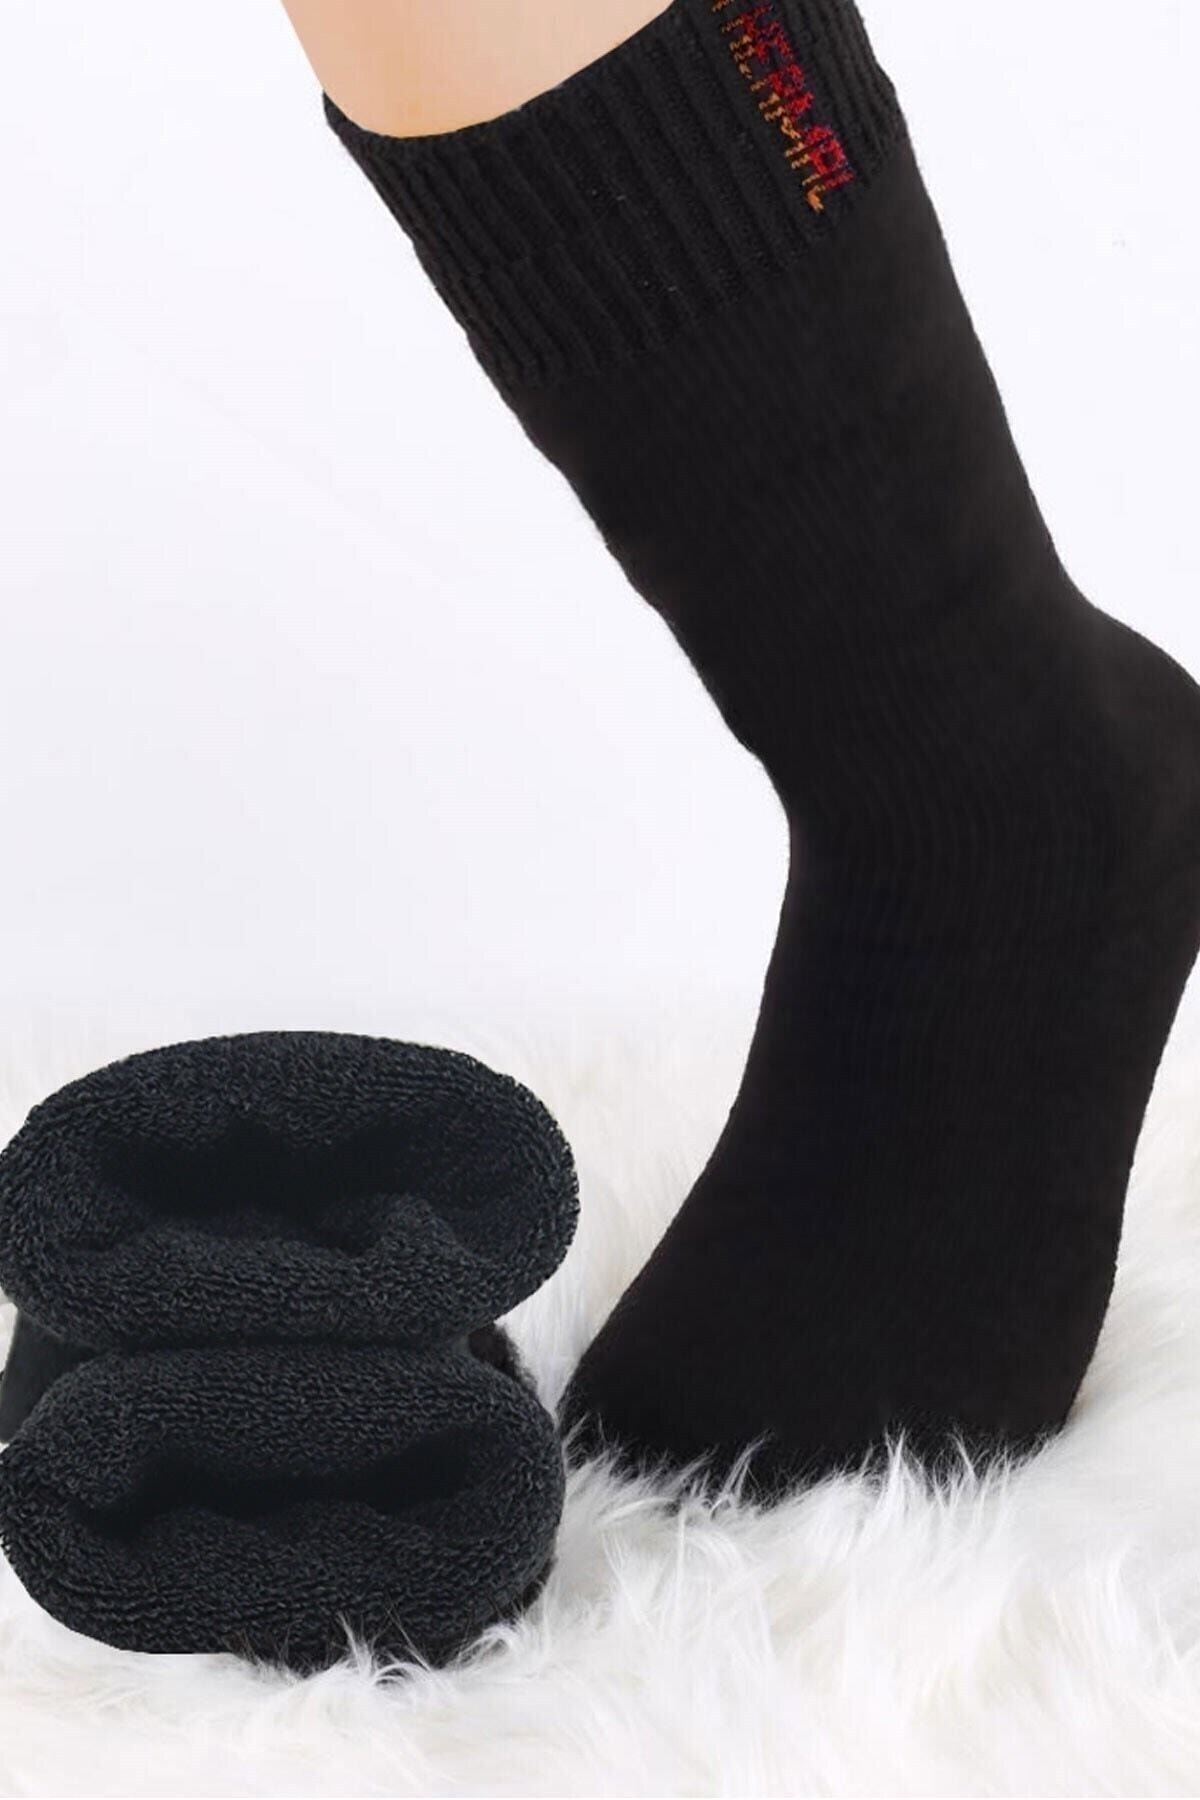 BlueStore Termal Kışlık Çorap Yünlü Rahat Güvenilir